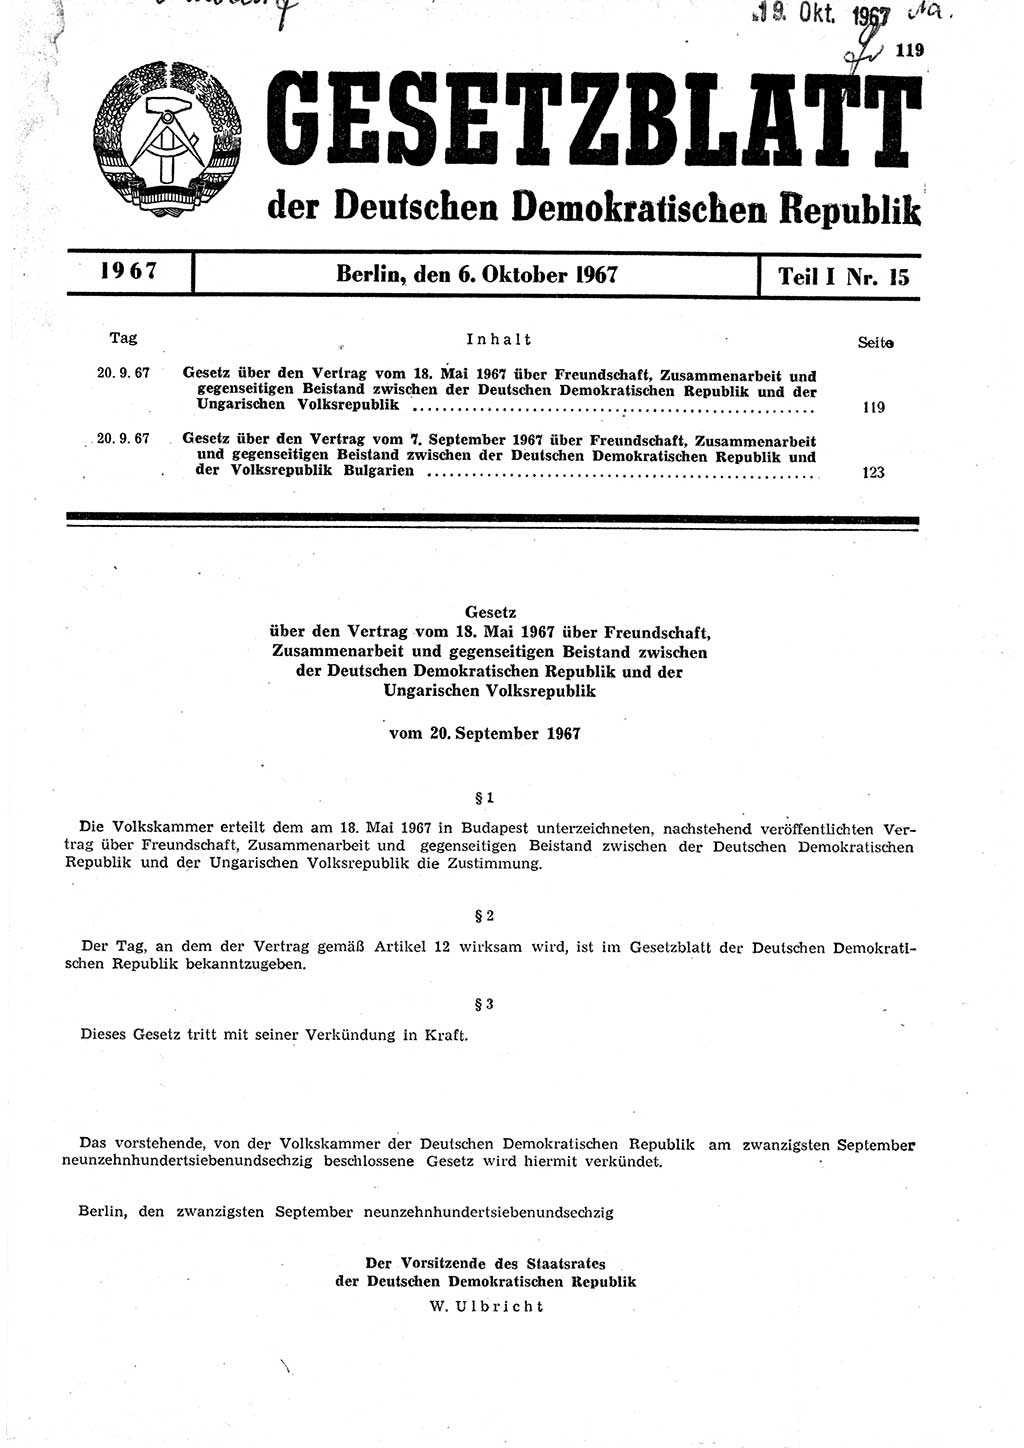 Gesetzblatt (GBl.) der Deutschen Demokratischen Republik (DDR) Teil Ⅰ 1967, Seite 119 (GBl. DDR Ⅰ 1967, S. 119)